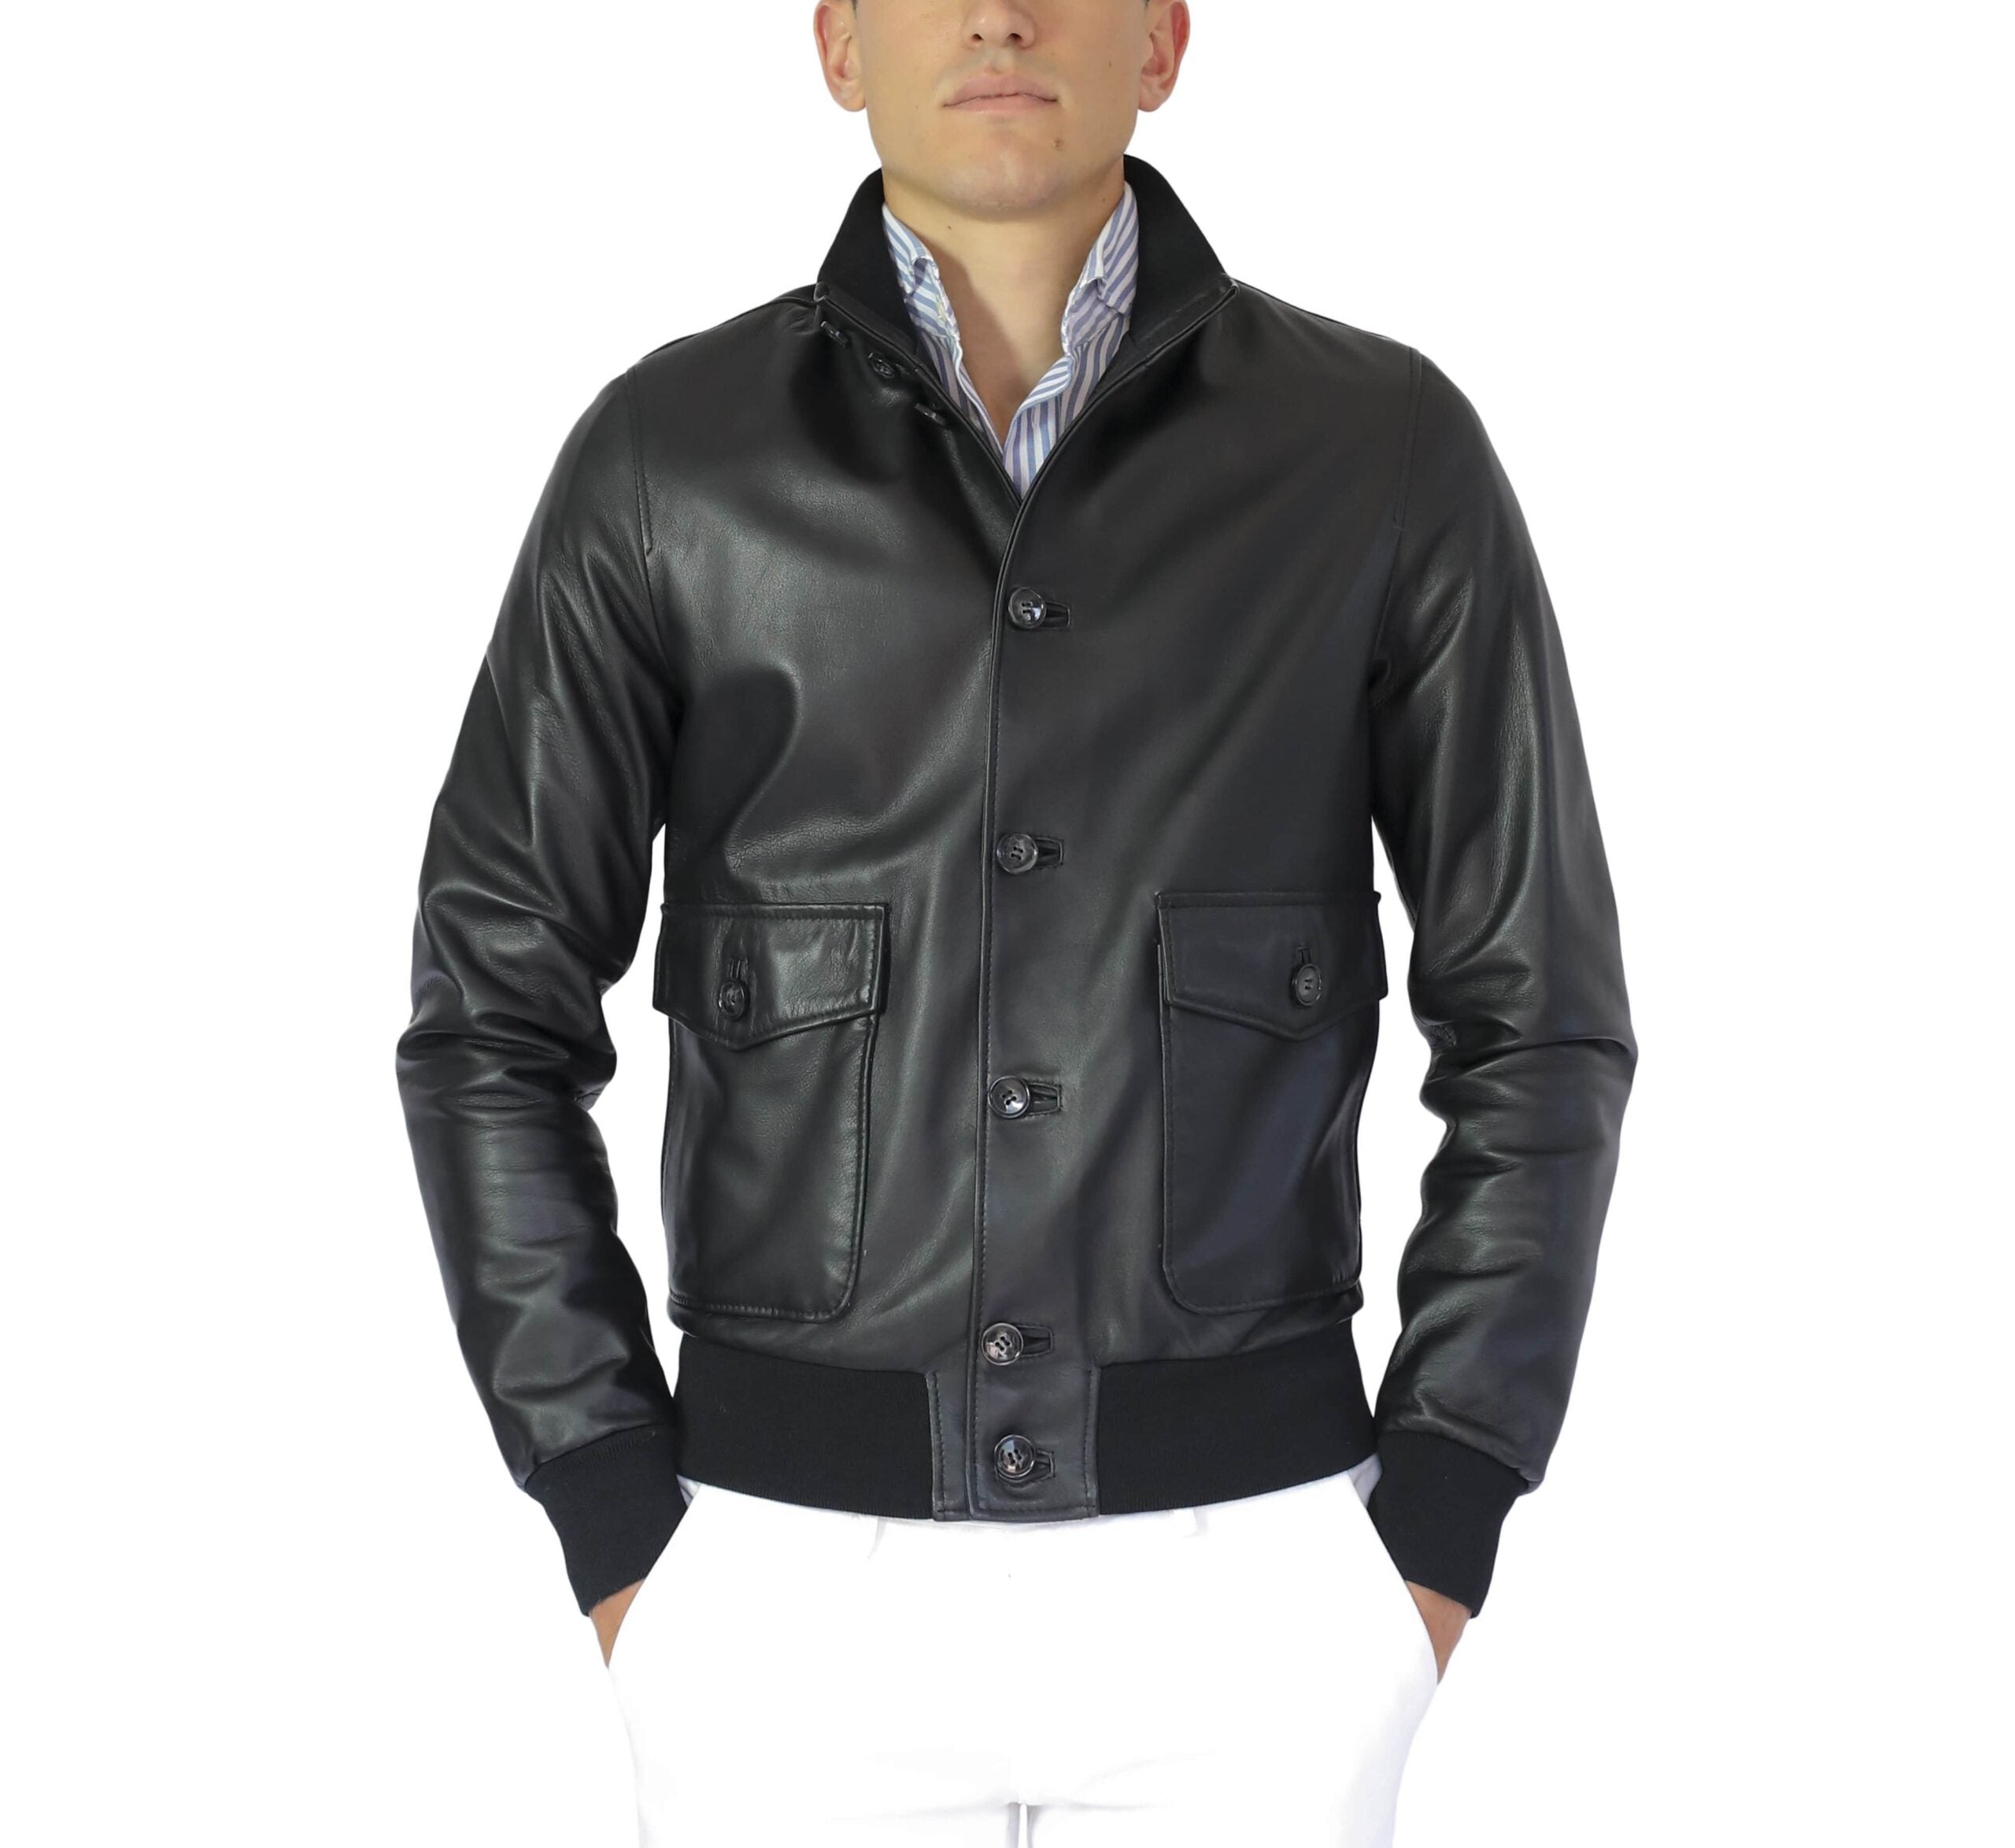 98NATNE leather jacket